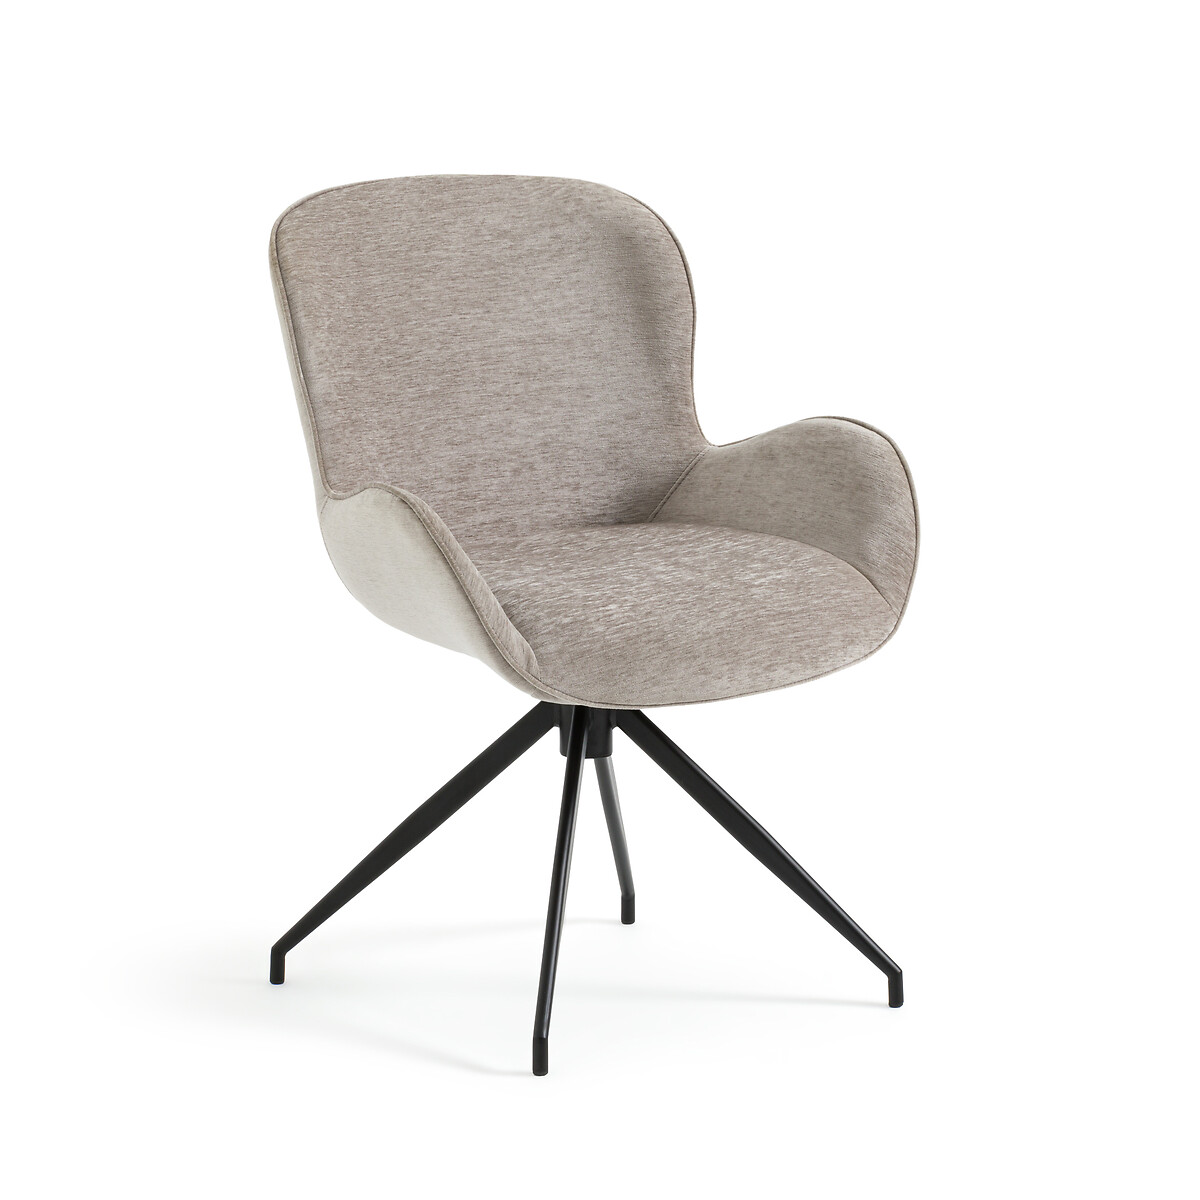 Кресло обеденное вращающееся с обивкой из велюра с эффектом синели Asyar единый размер серый кресло обеденное из двух материалов biface единый размер серый